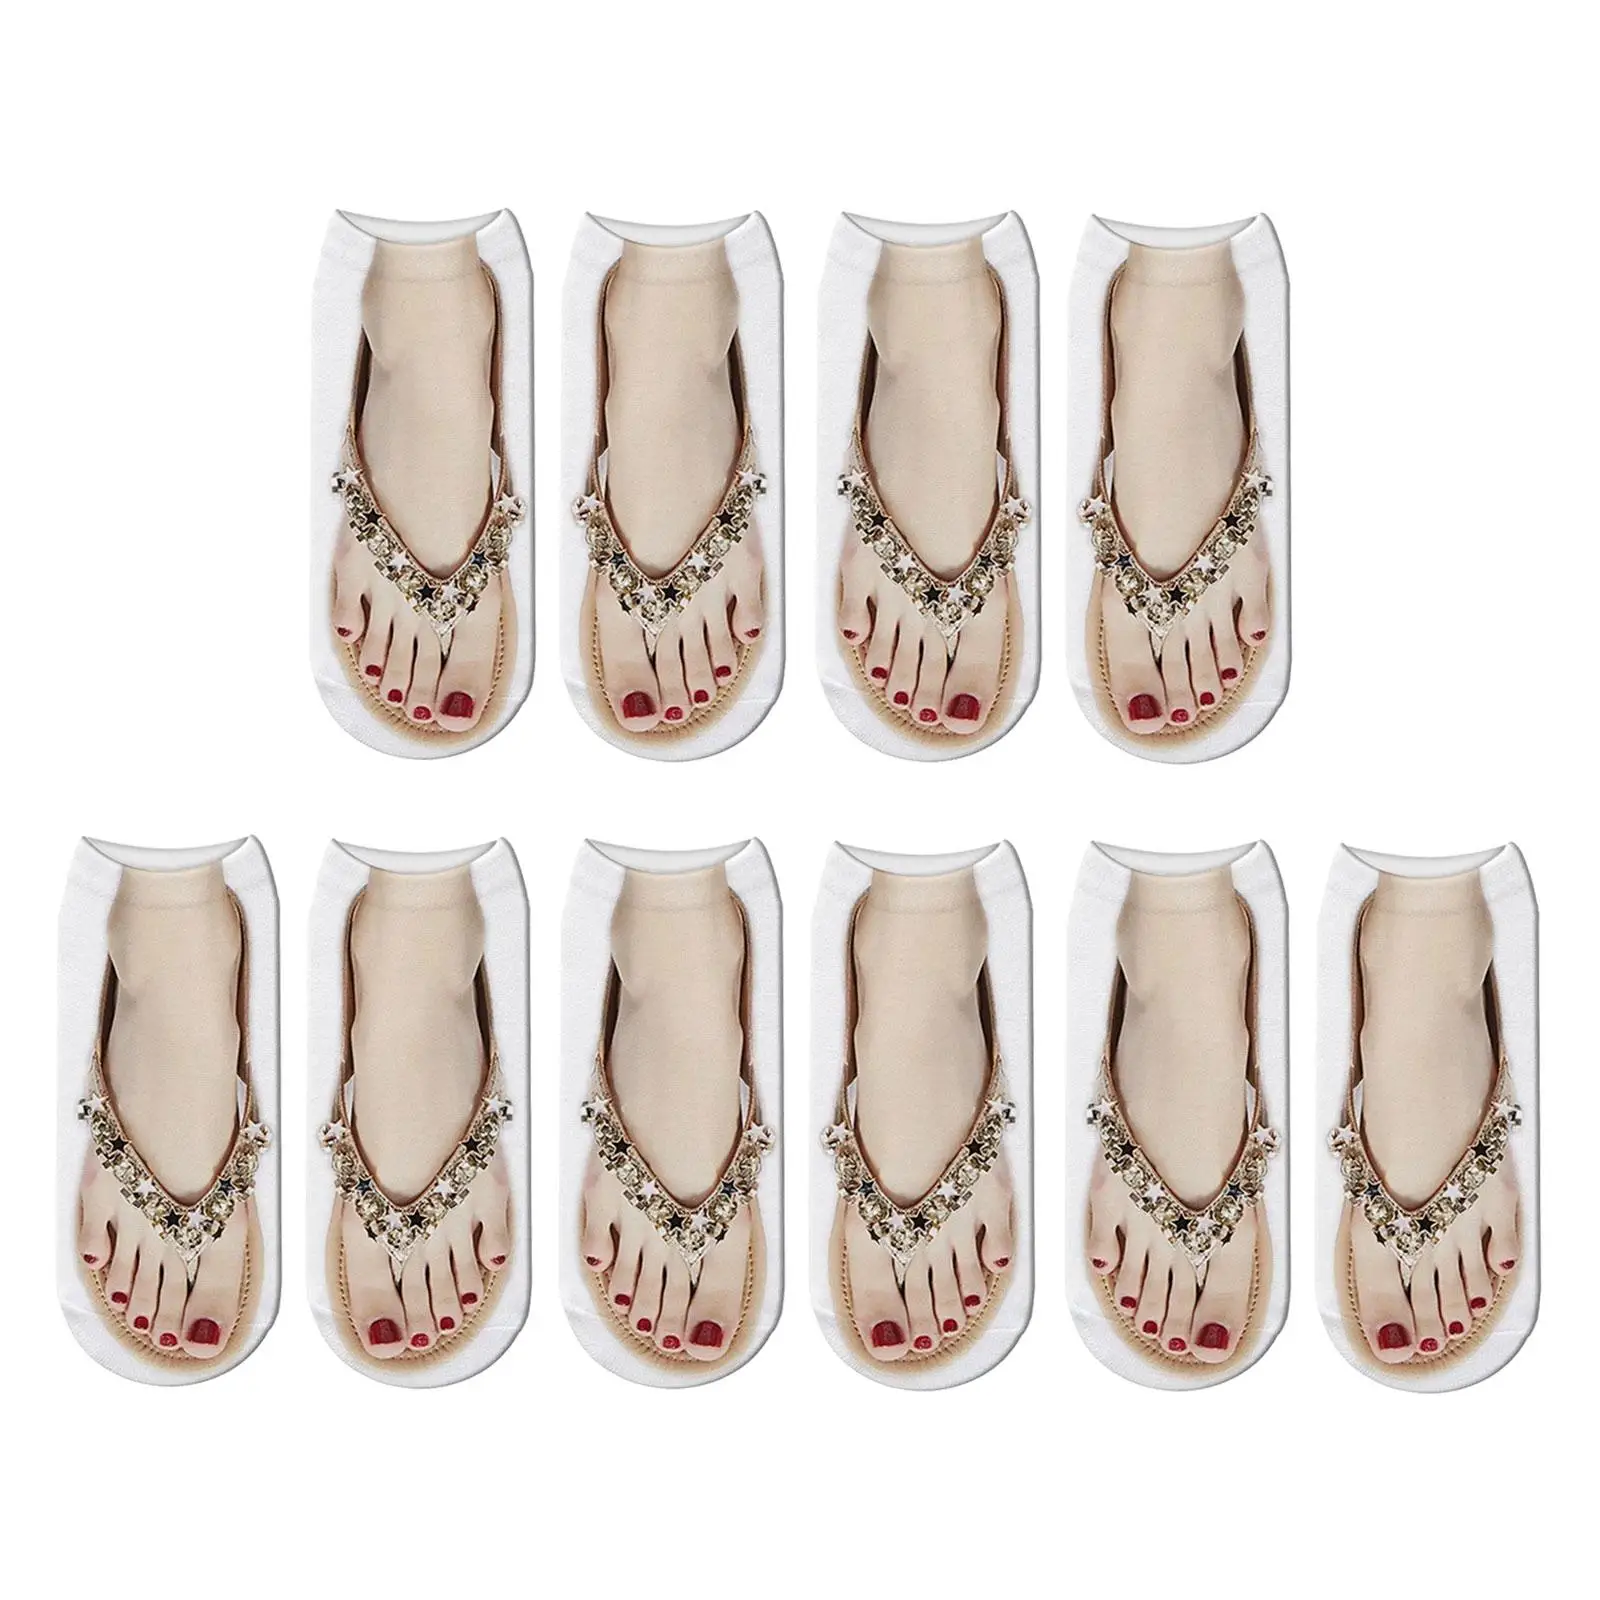 Manicure Print Socks Hidden Novelty 3D Pattern Socks Funny Stocking Ankle Socks for Women Girls Yoga Christmas Walking Halloween